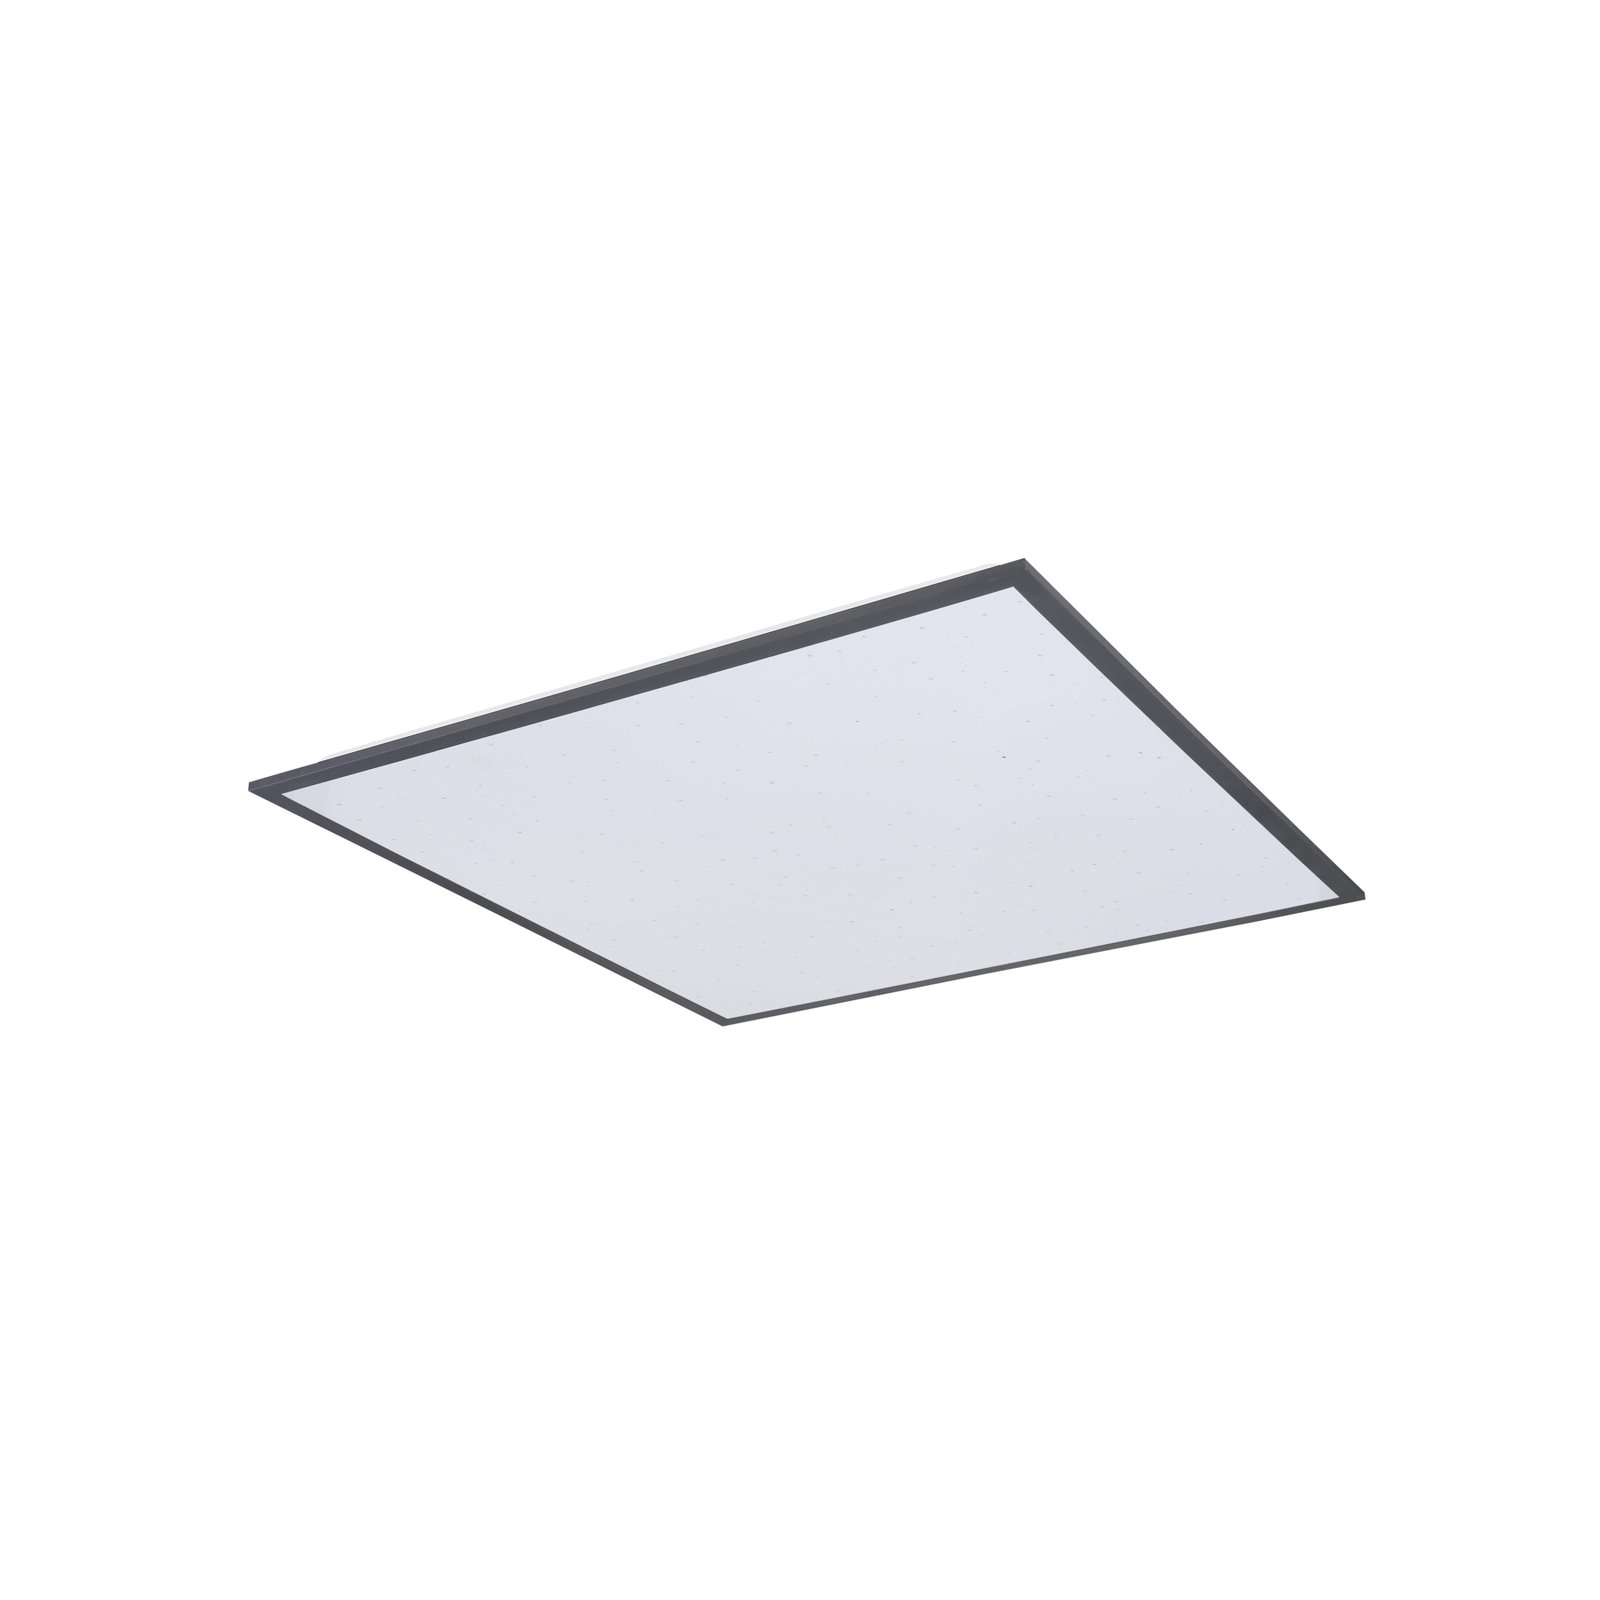 LED-Deckenleuchte Doro, Länge 59 cm, weiß/grafit, Aluminium